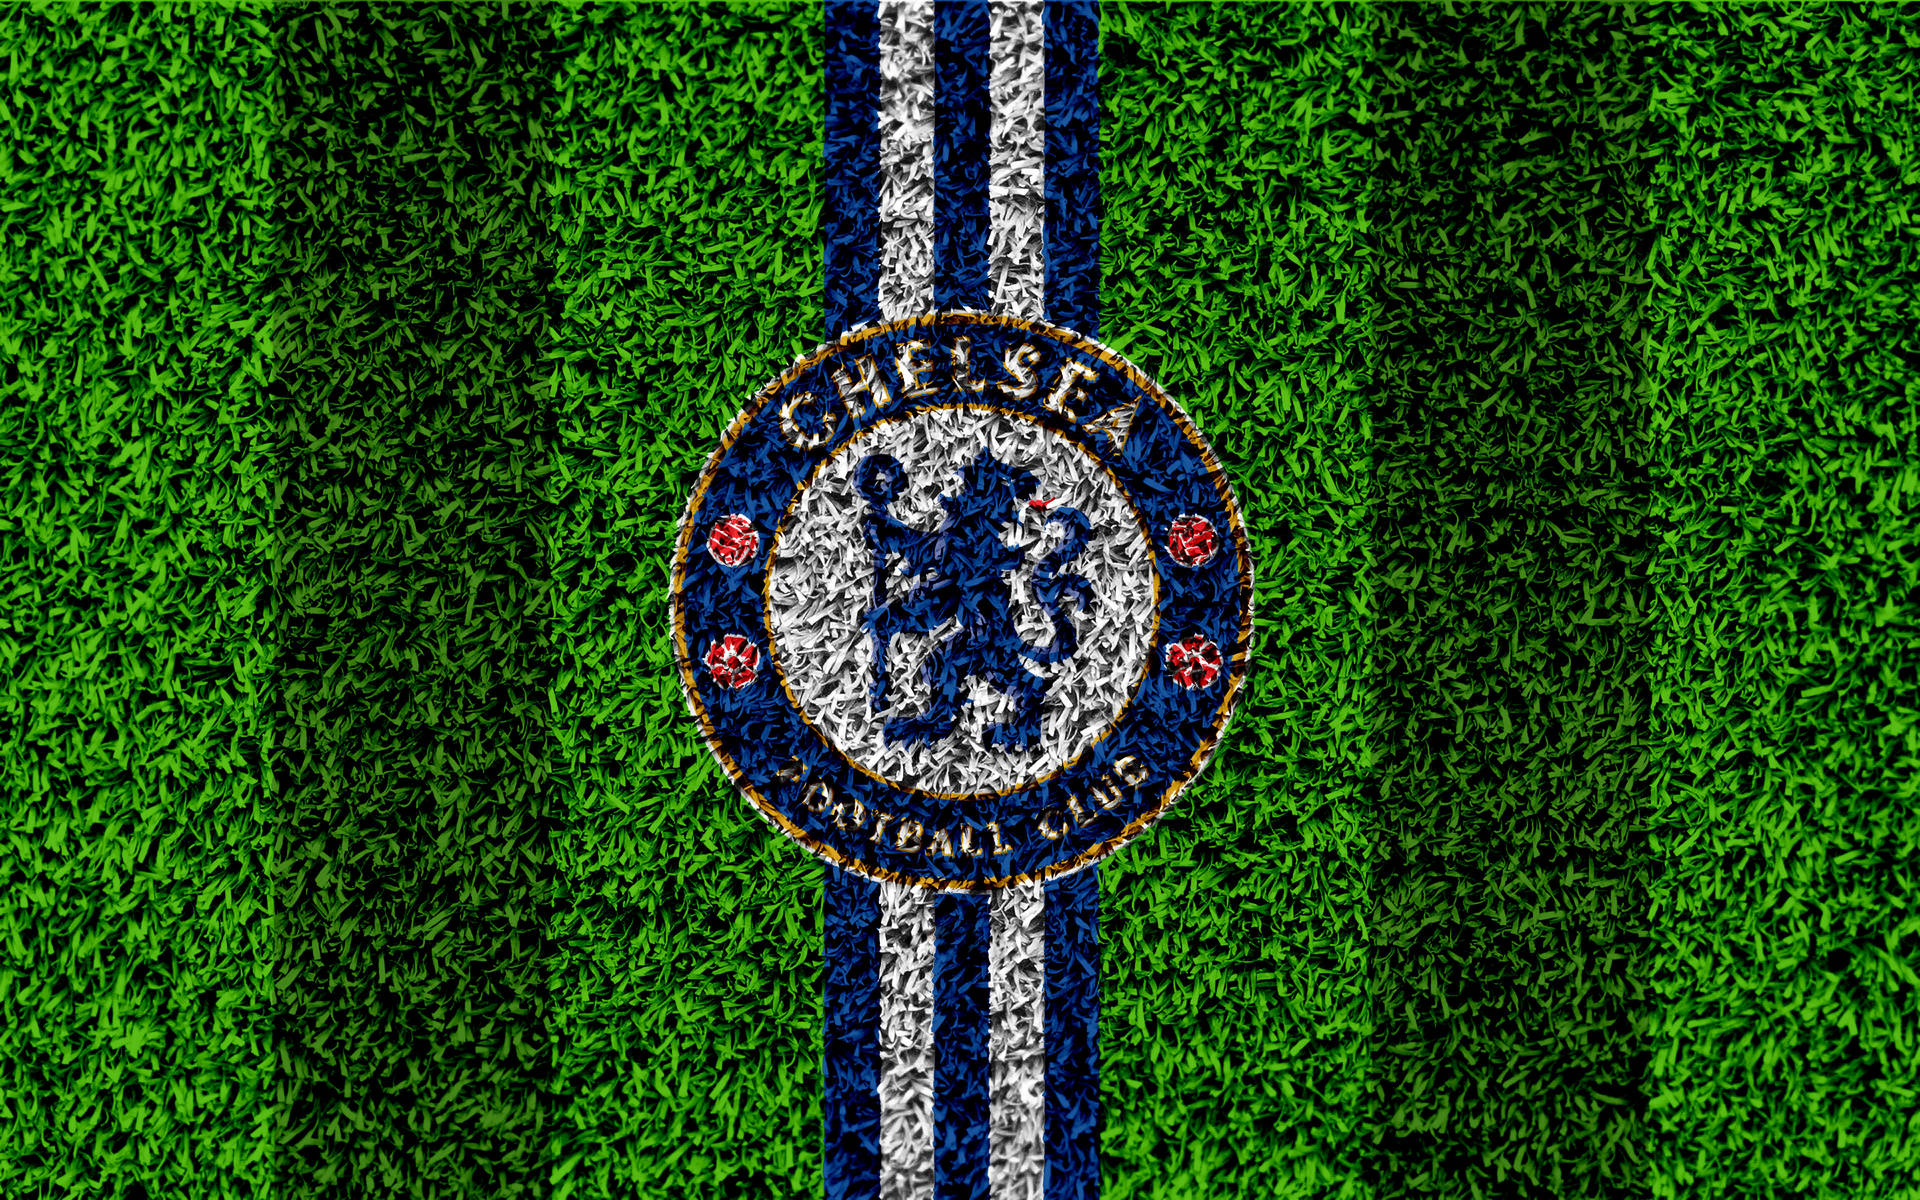 Chelsea Fc Logo On Grass Wallpaper